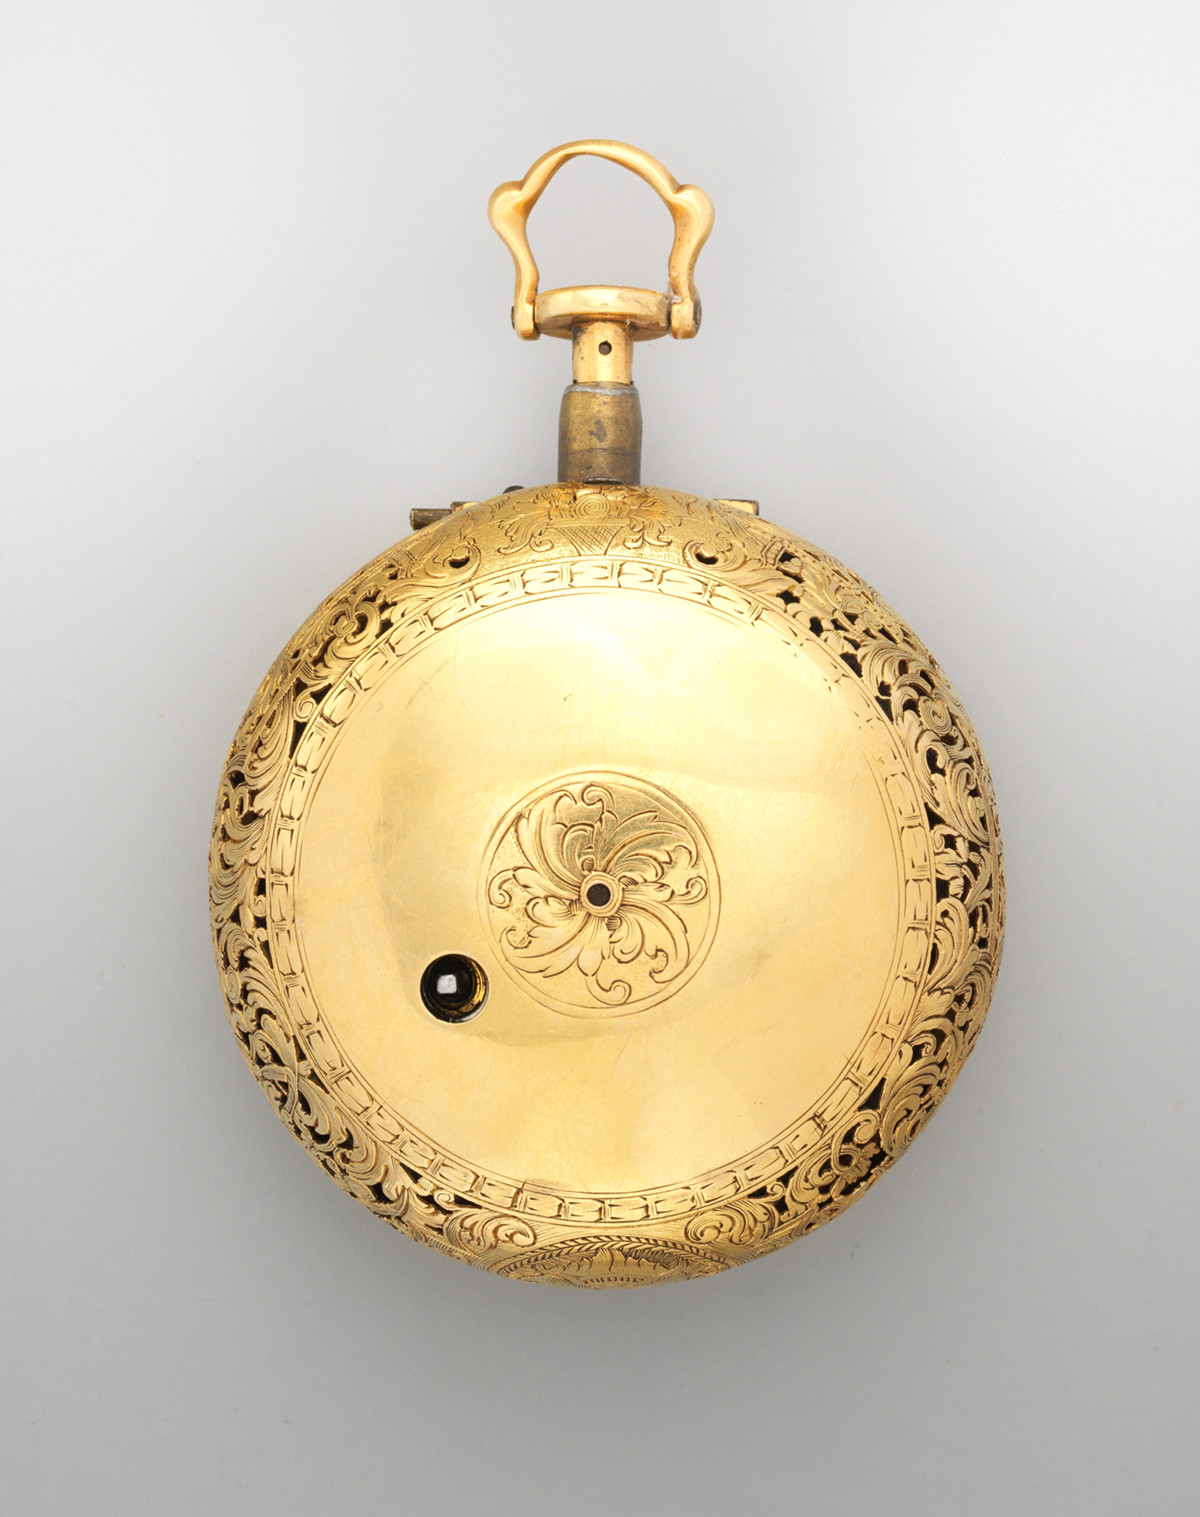 1740. Watch. British, London. Gold, enamel. metmuseum